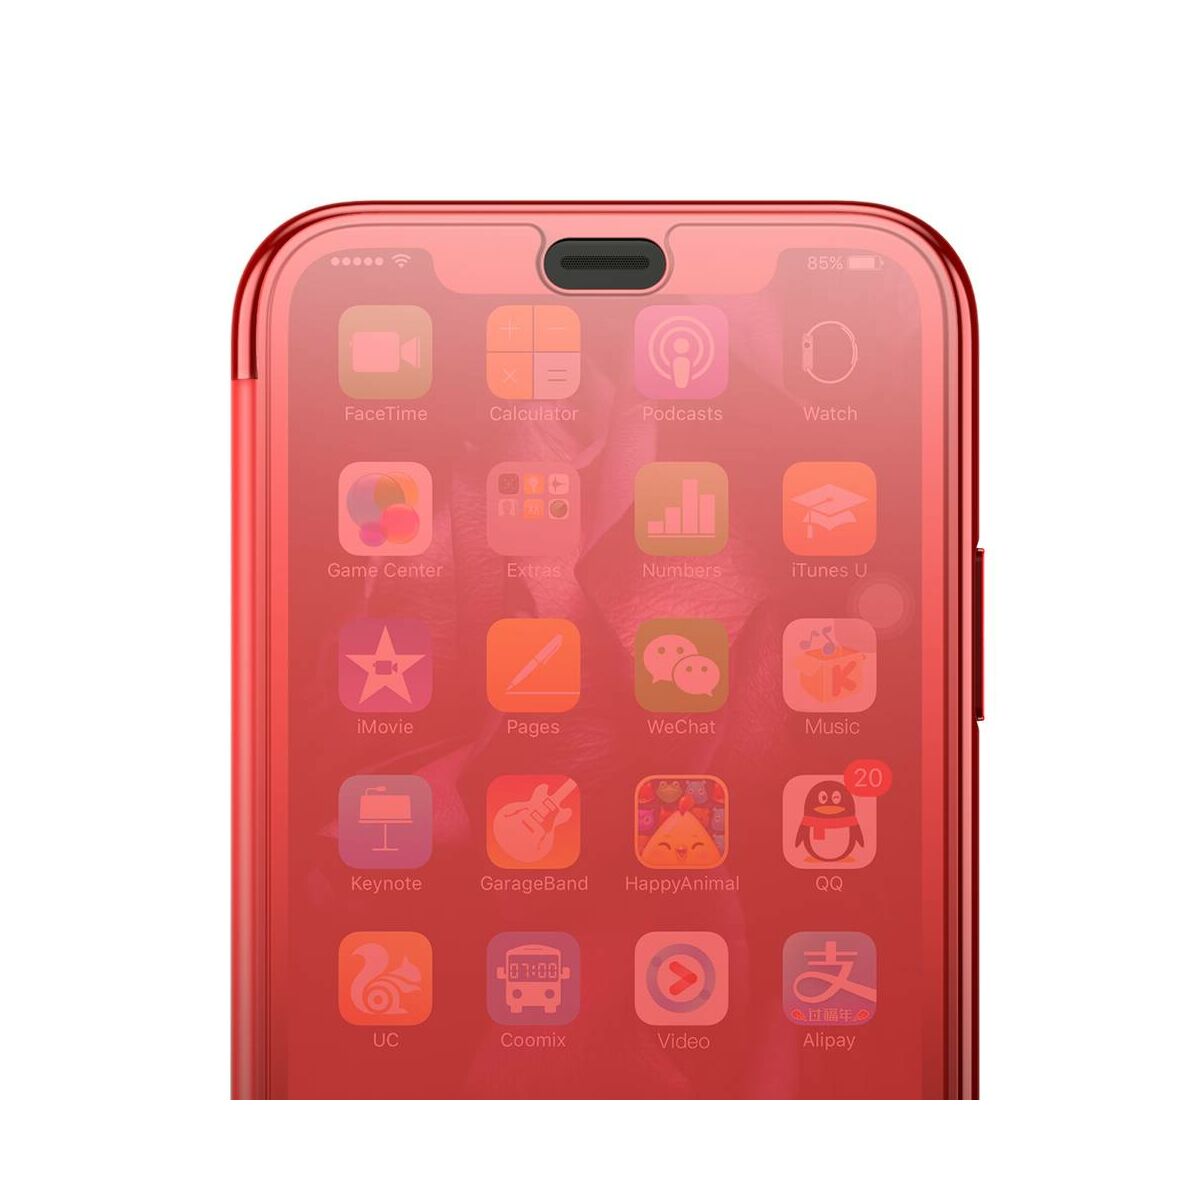 Baseus iPhone XS Max tok, Touchable kihajtható, érintőfelületű flip tok, piros (WIAPIPH65-TS09)